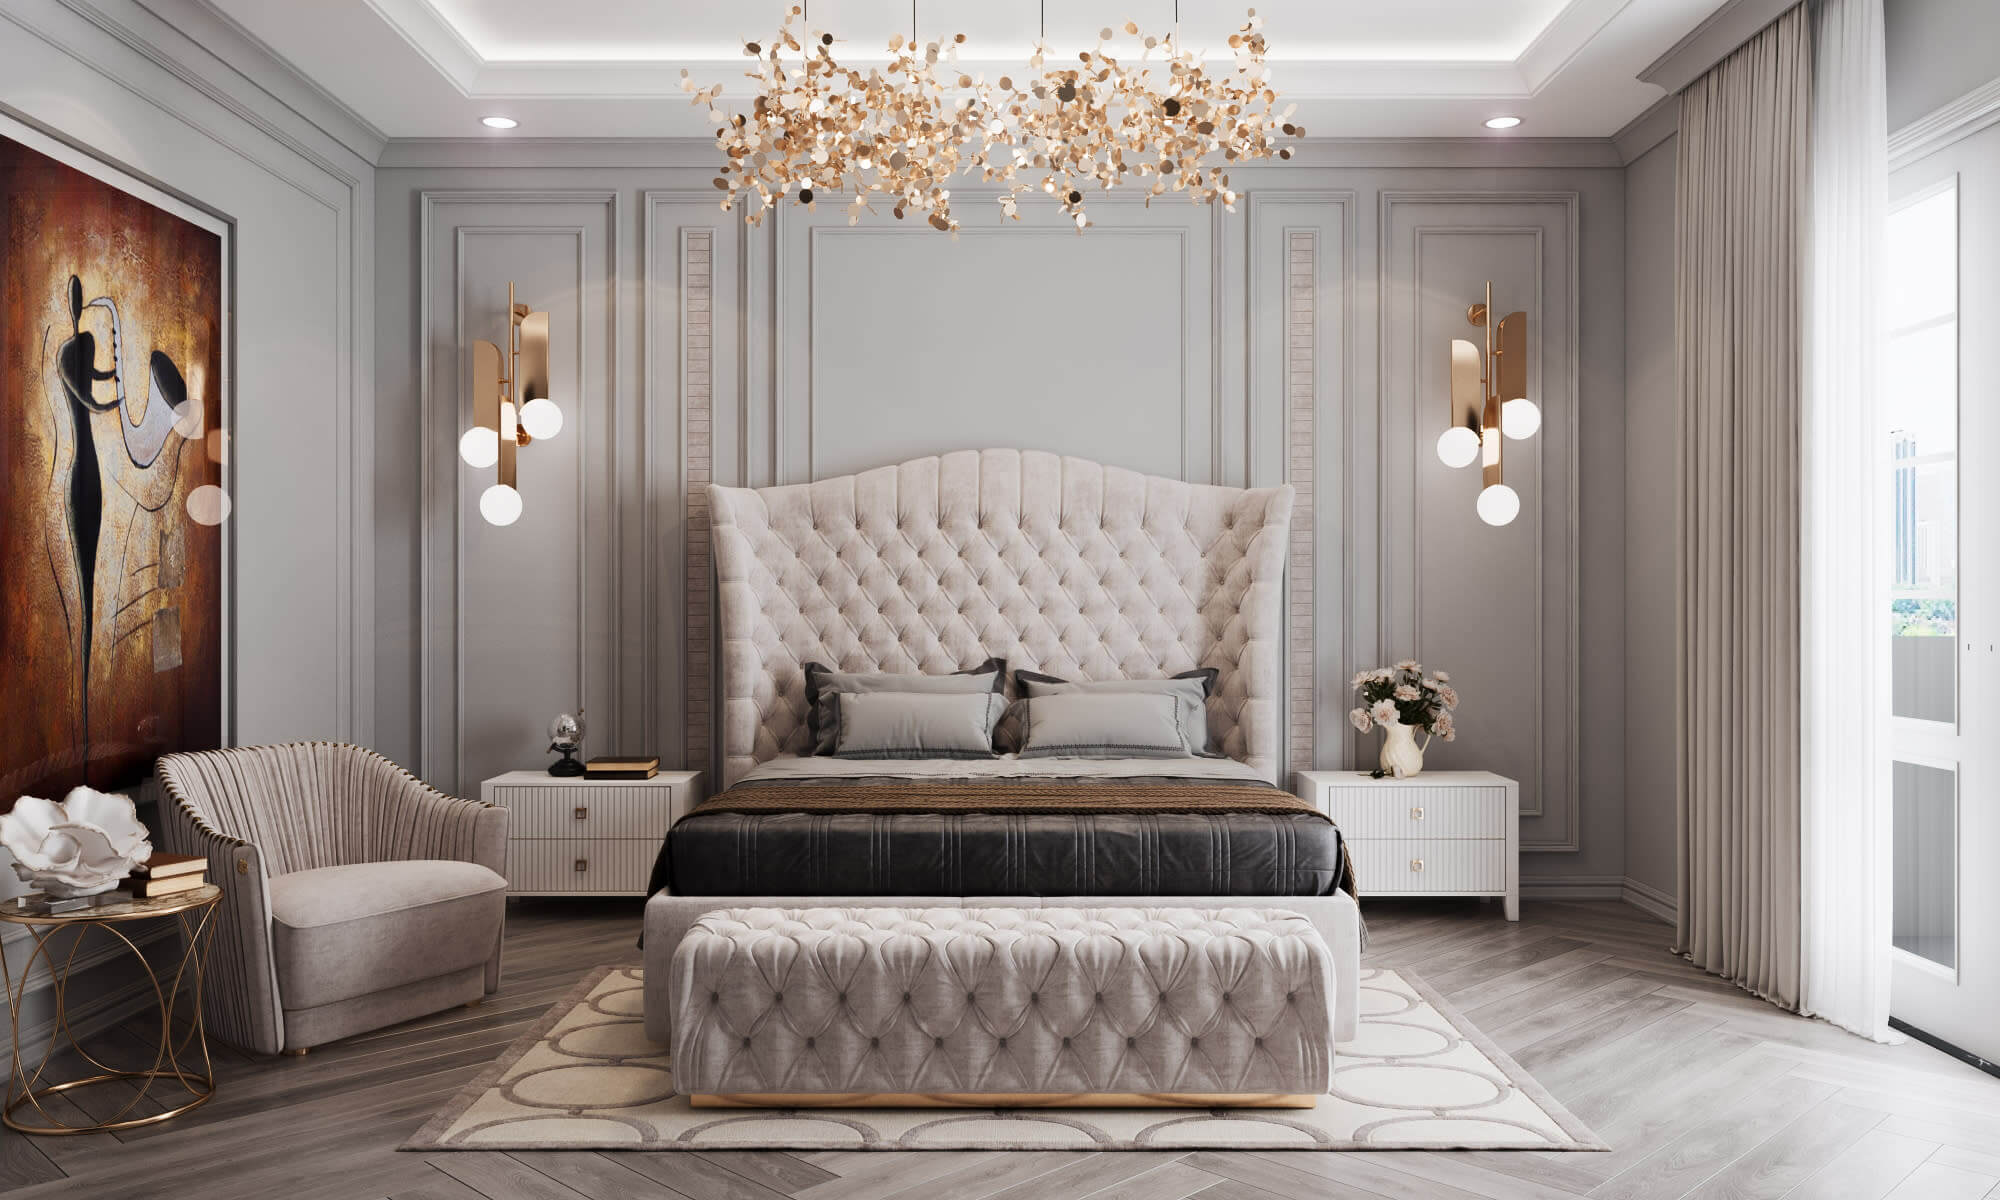 Các nội thất đều bằng chất liệu sofa với đường nét pha trộn hiện đại và cổ điển 